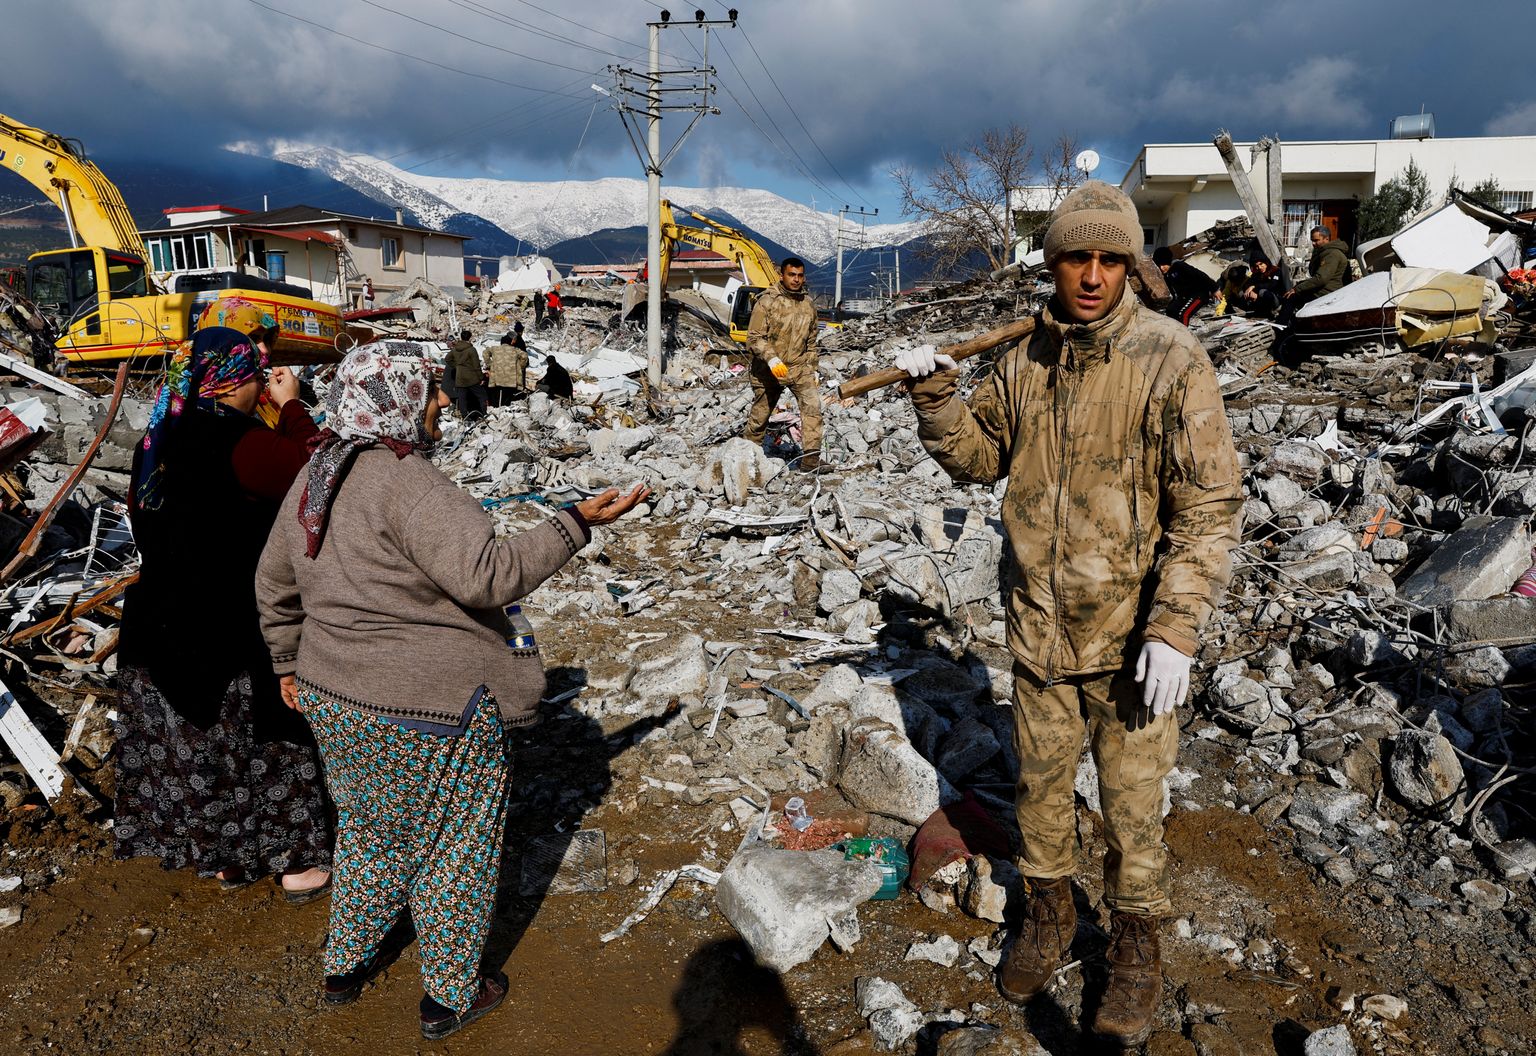 Gaziantep, Türgi. Päästetöötajad trotsivad külma ilma.